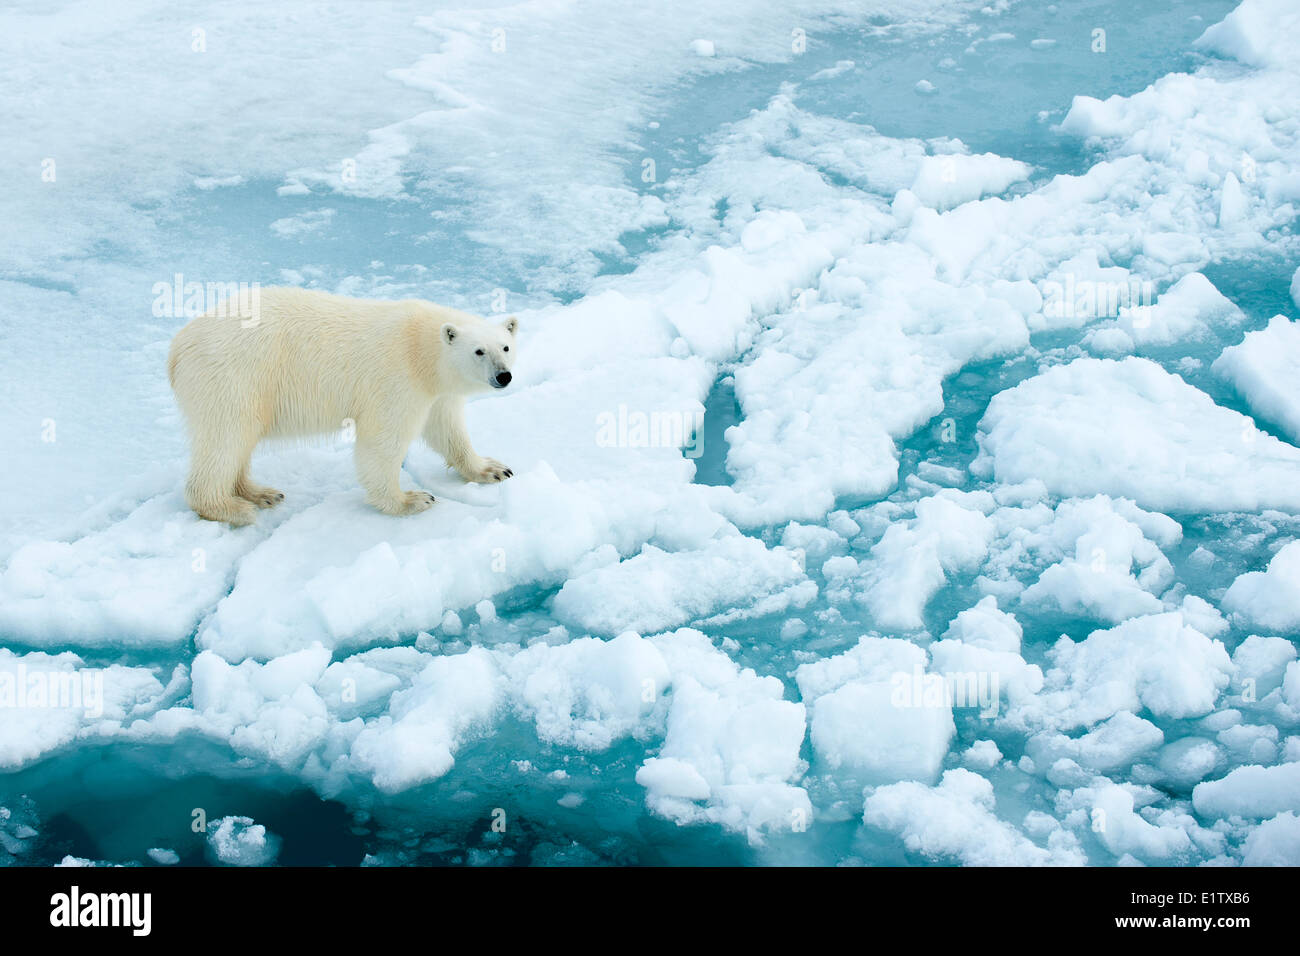 L'ours polaire (Ursus maritimus) sur la banquise, archipel du Svalbard, l'Arctique norvégien Banque D'Images